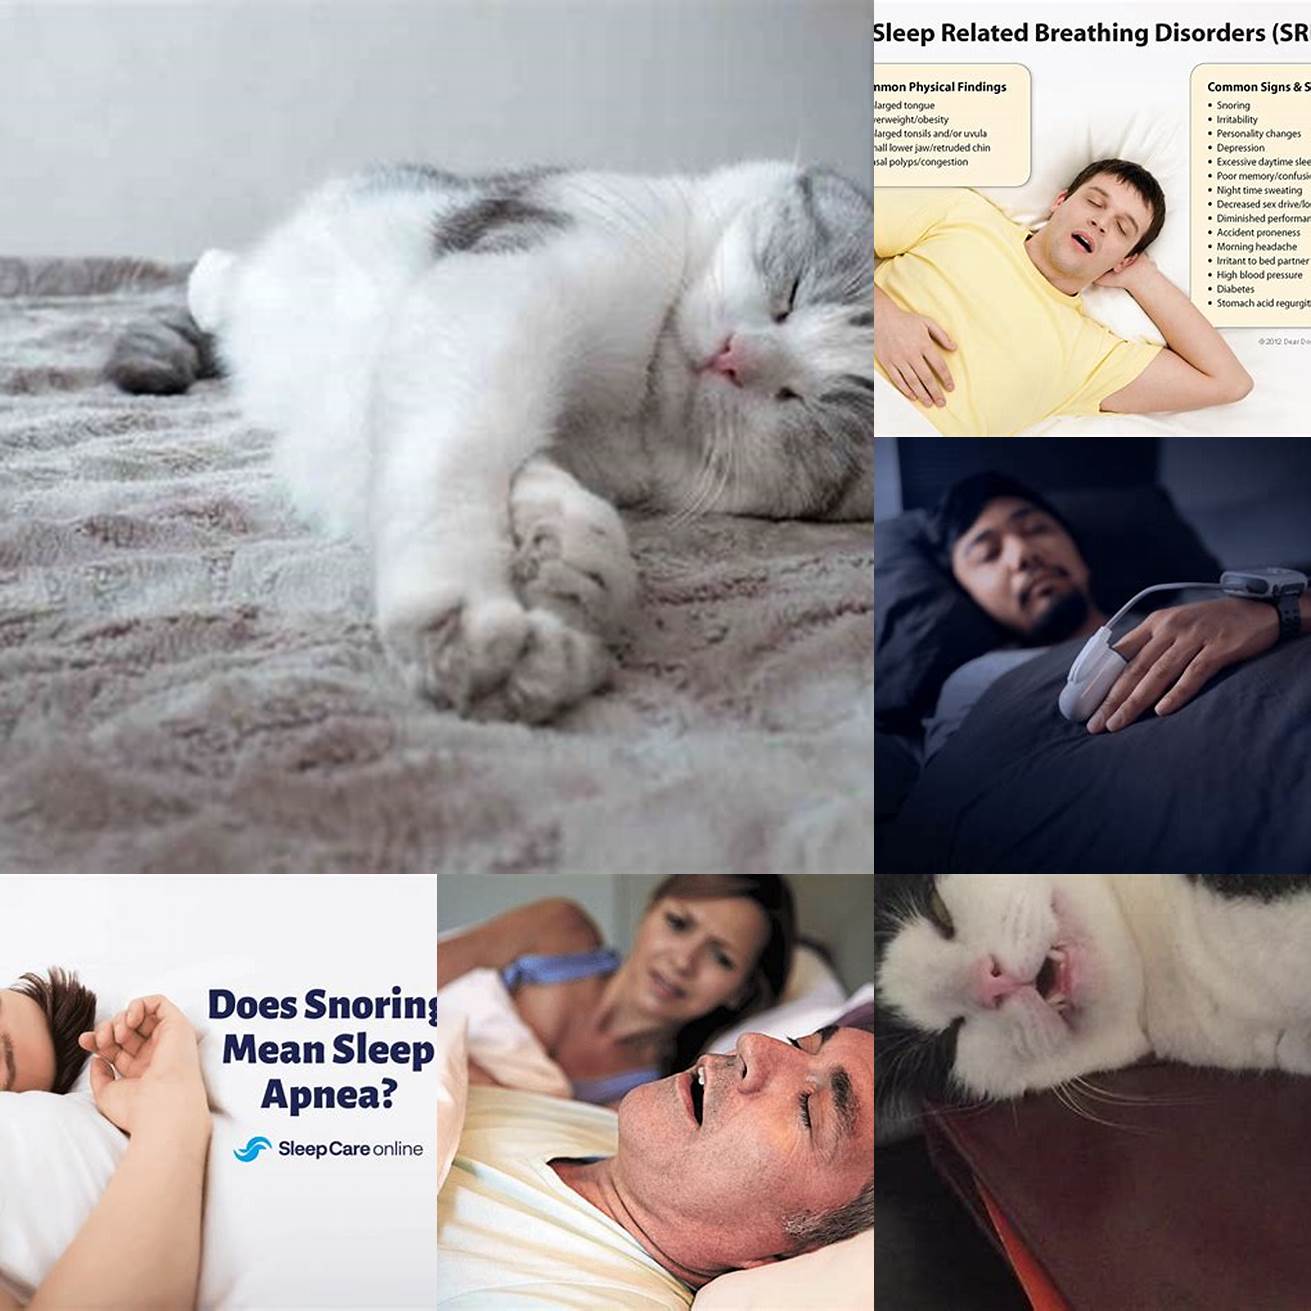 Q Is snoring always a sign of sleep apnea in cats